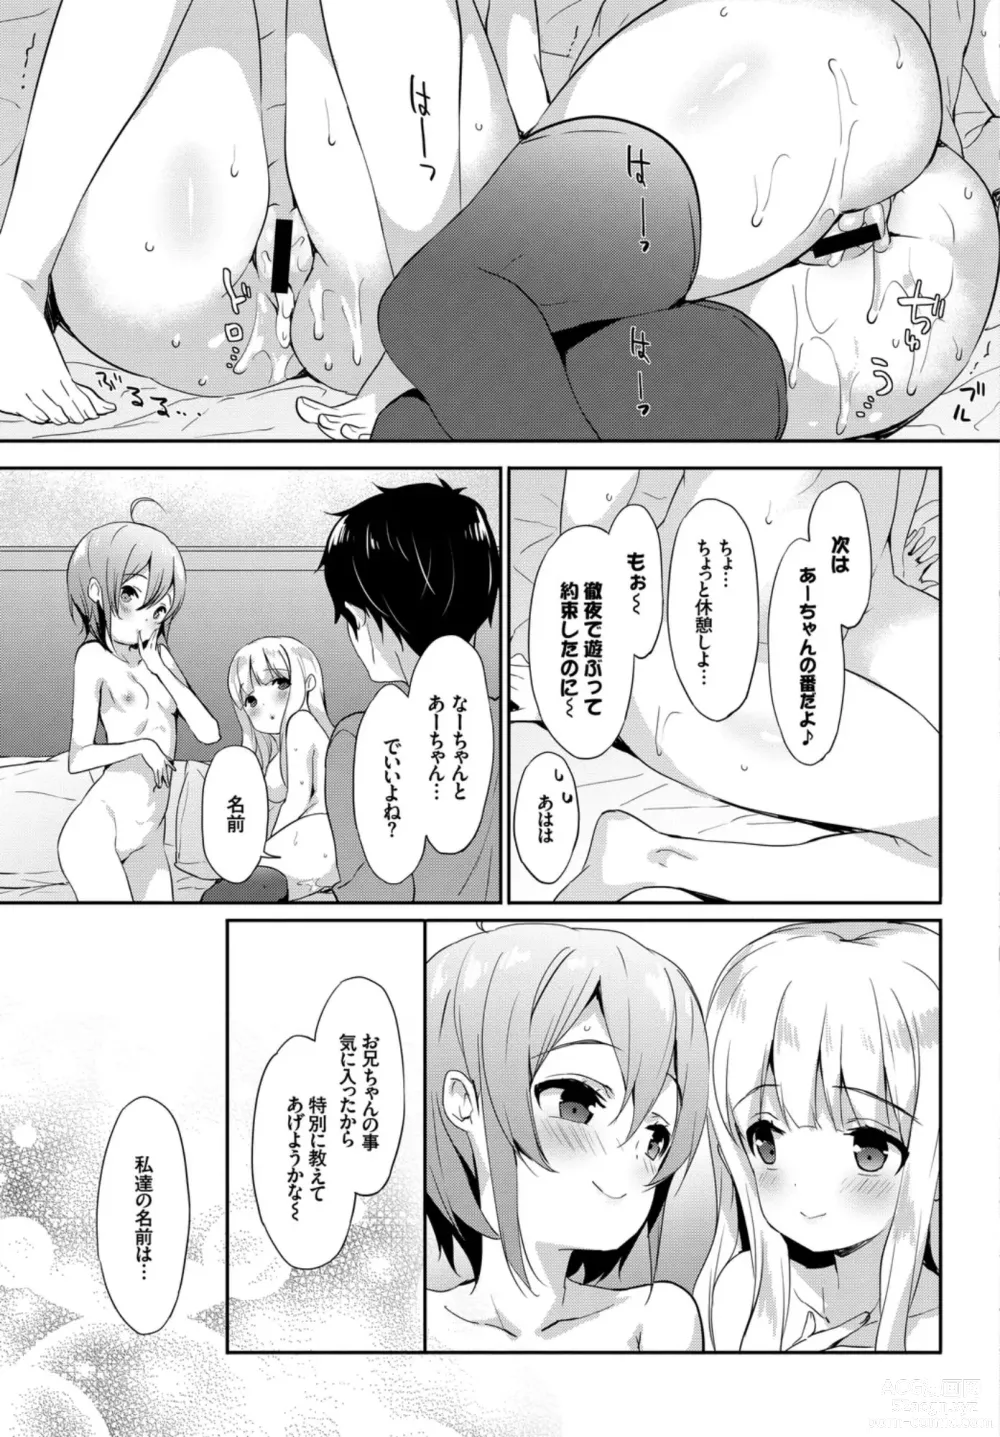 Page 85 of manga Oppai Sand de Shouten Shichao VOL. 2 ~Futago Hen~